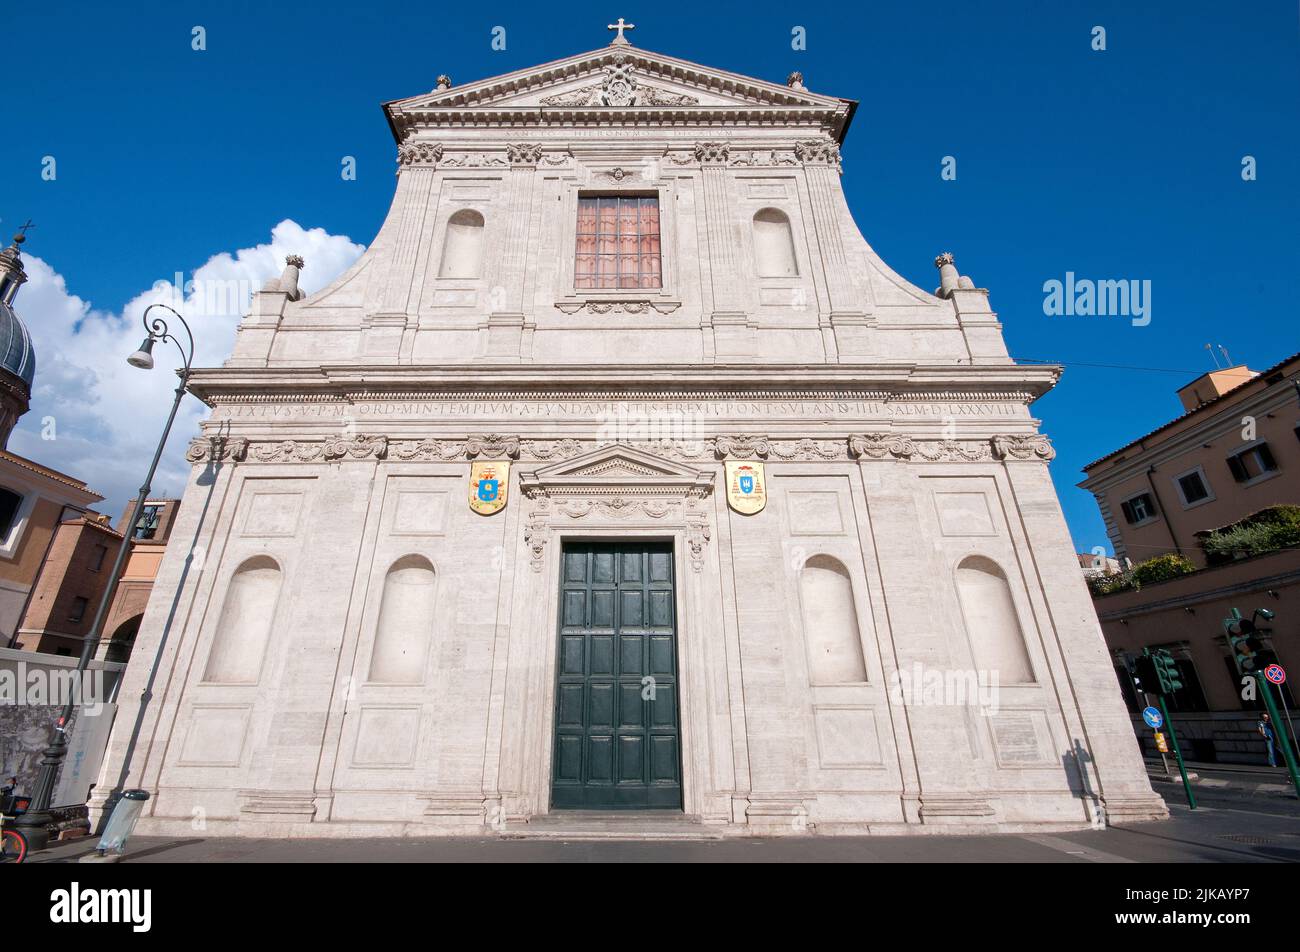 San Girolamo dei Croati church (1588-1589), Rome, Italy Stock Photo